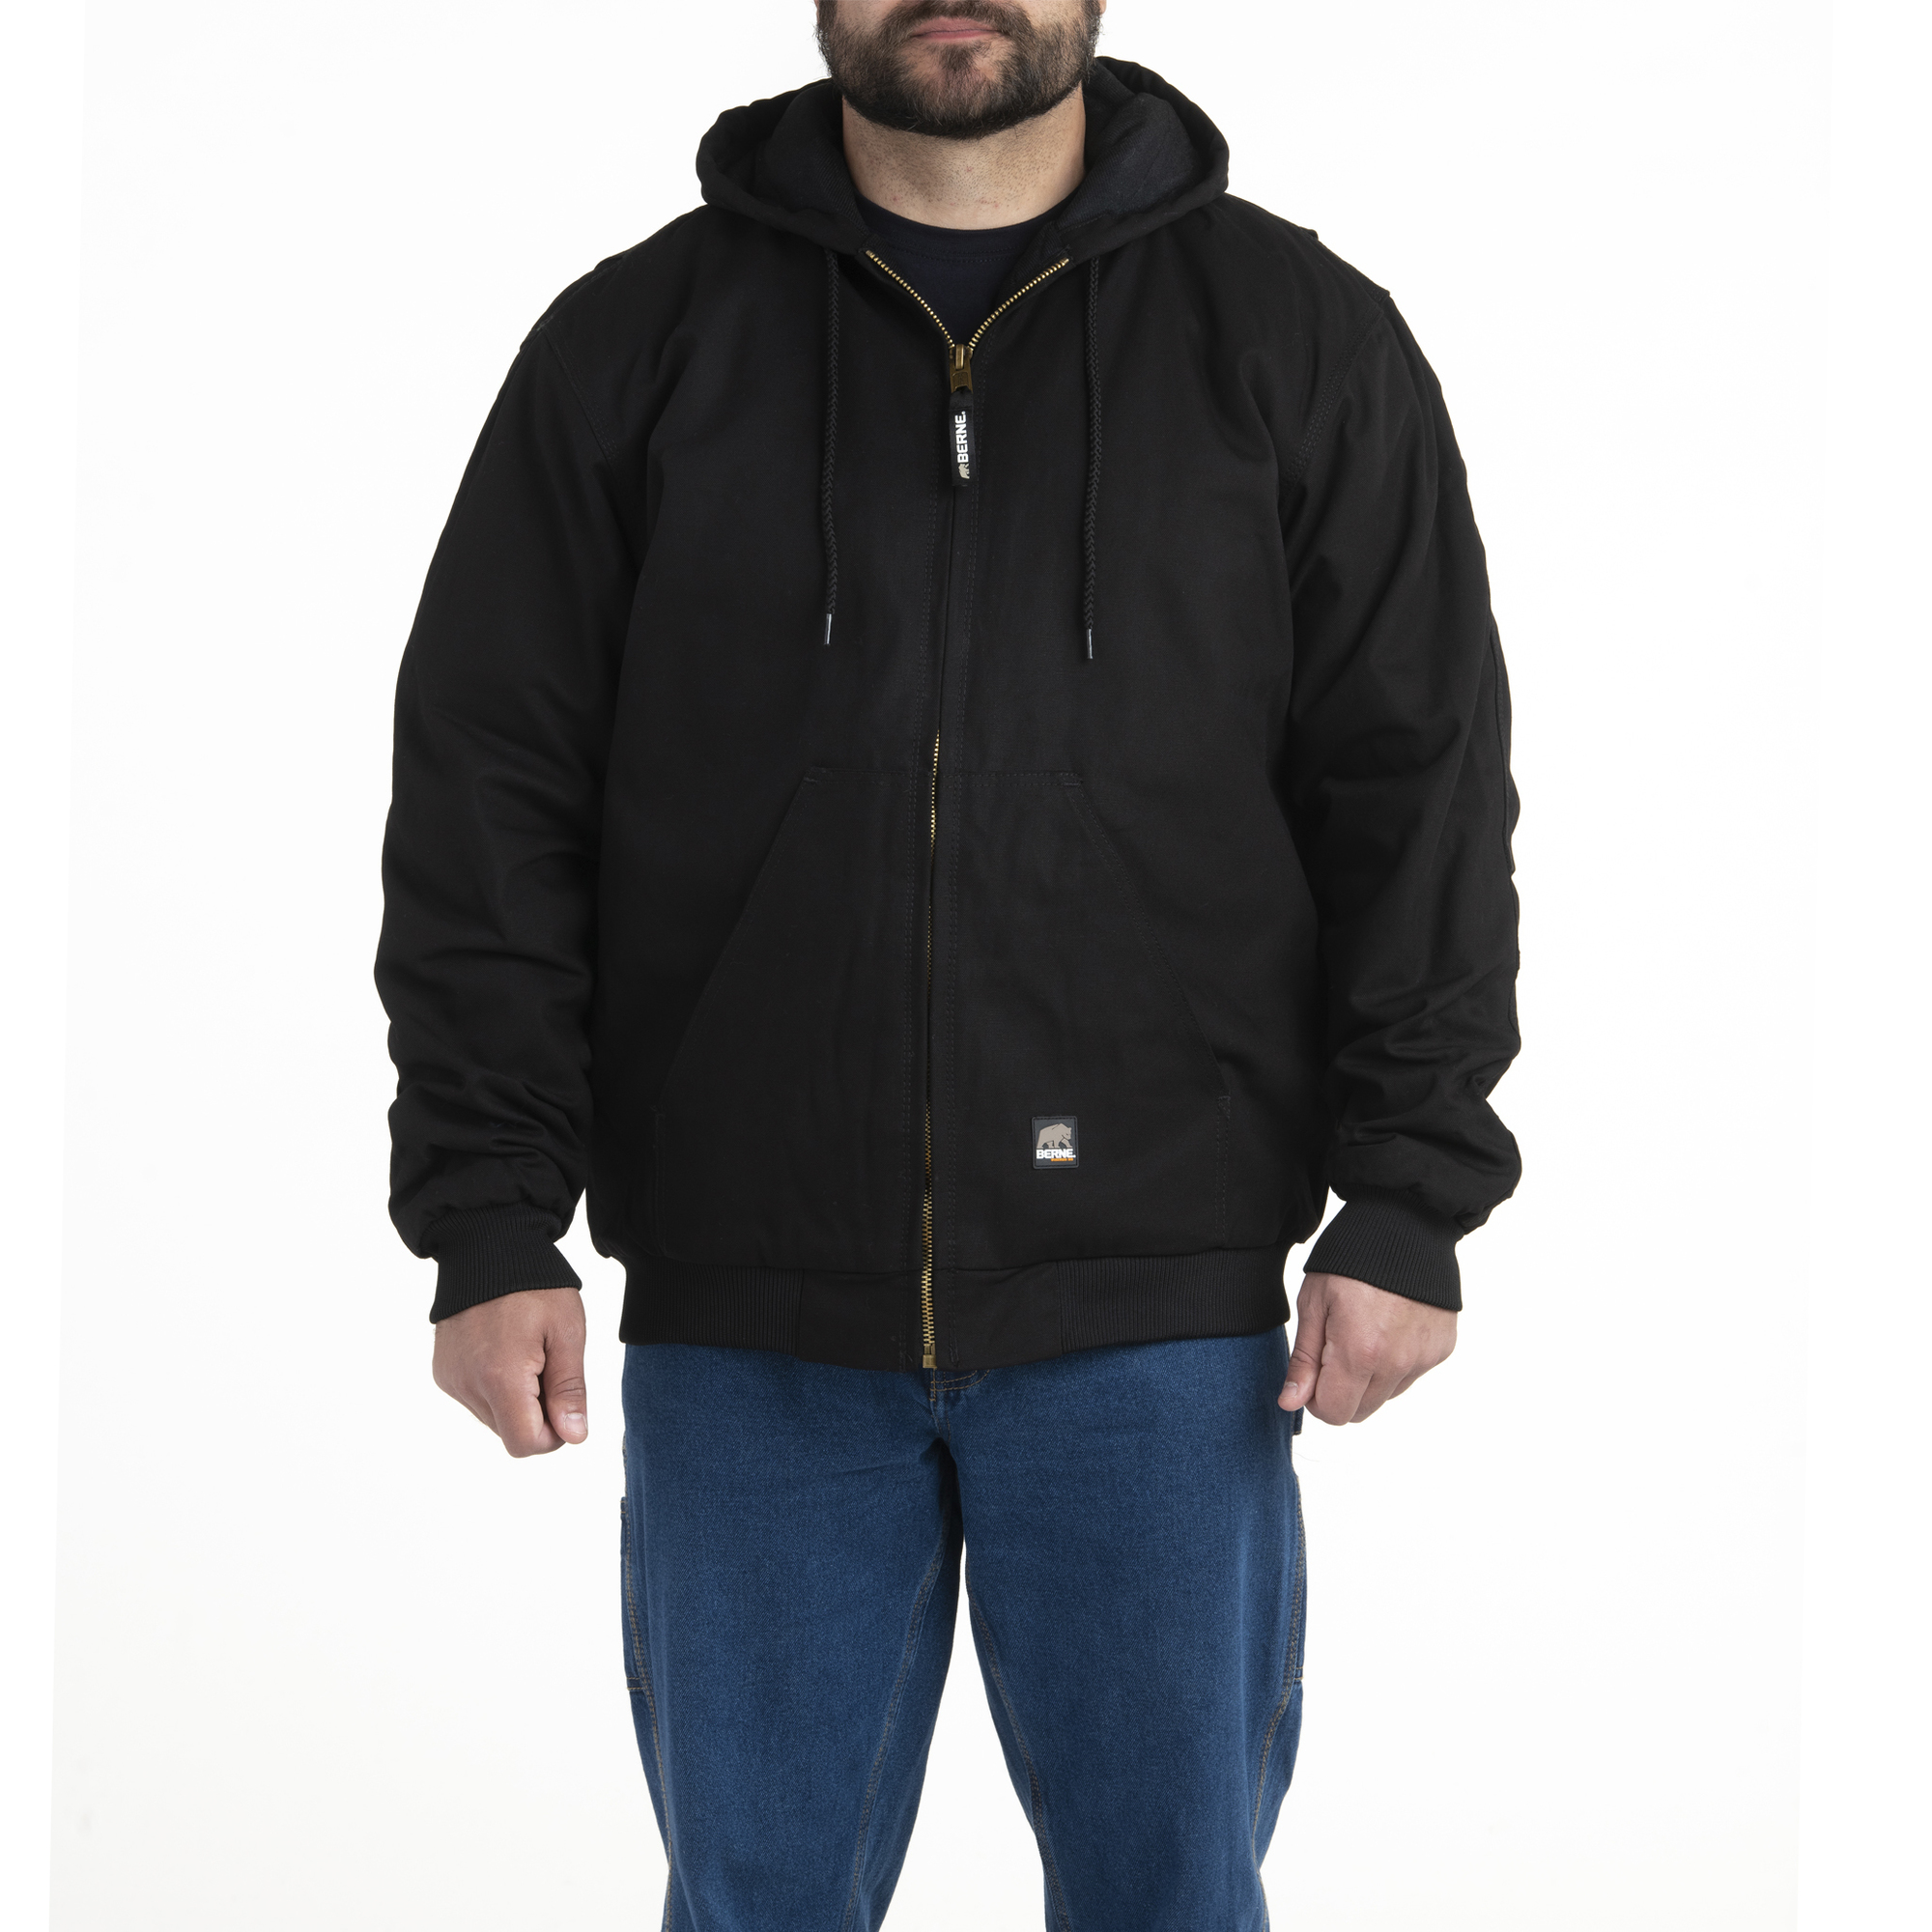 Berne Apparel, Heritage Hooded Jacket, Size 6XL, Color Black, Model HJ51